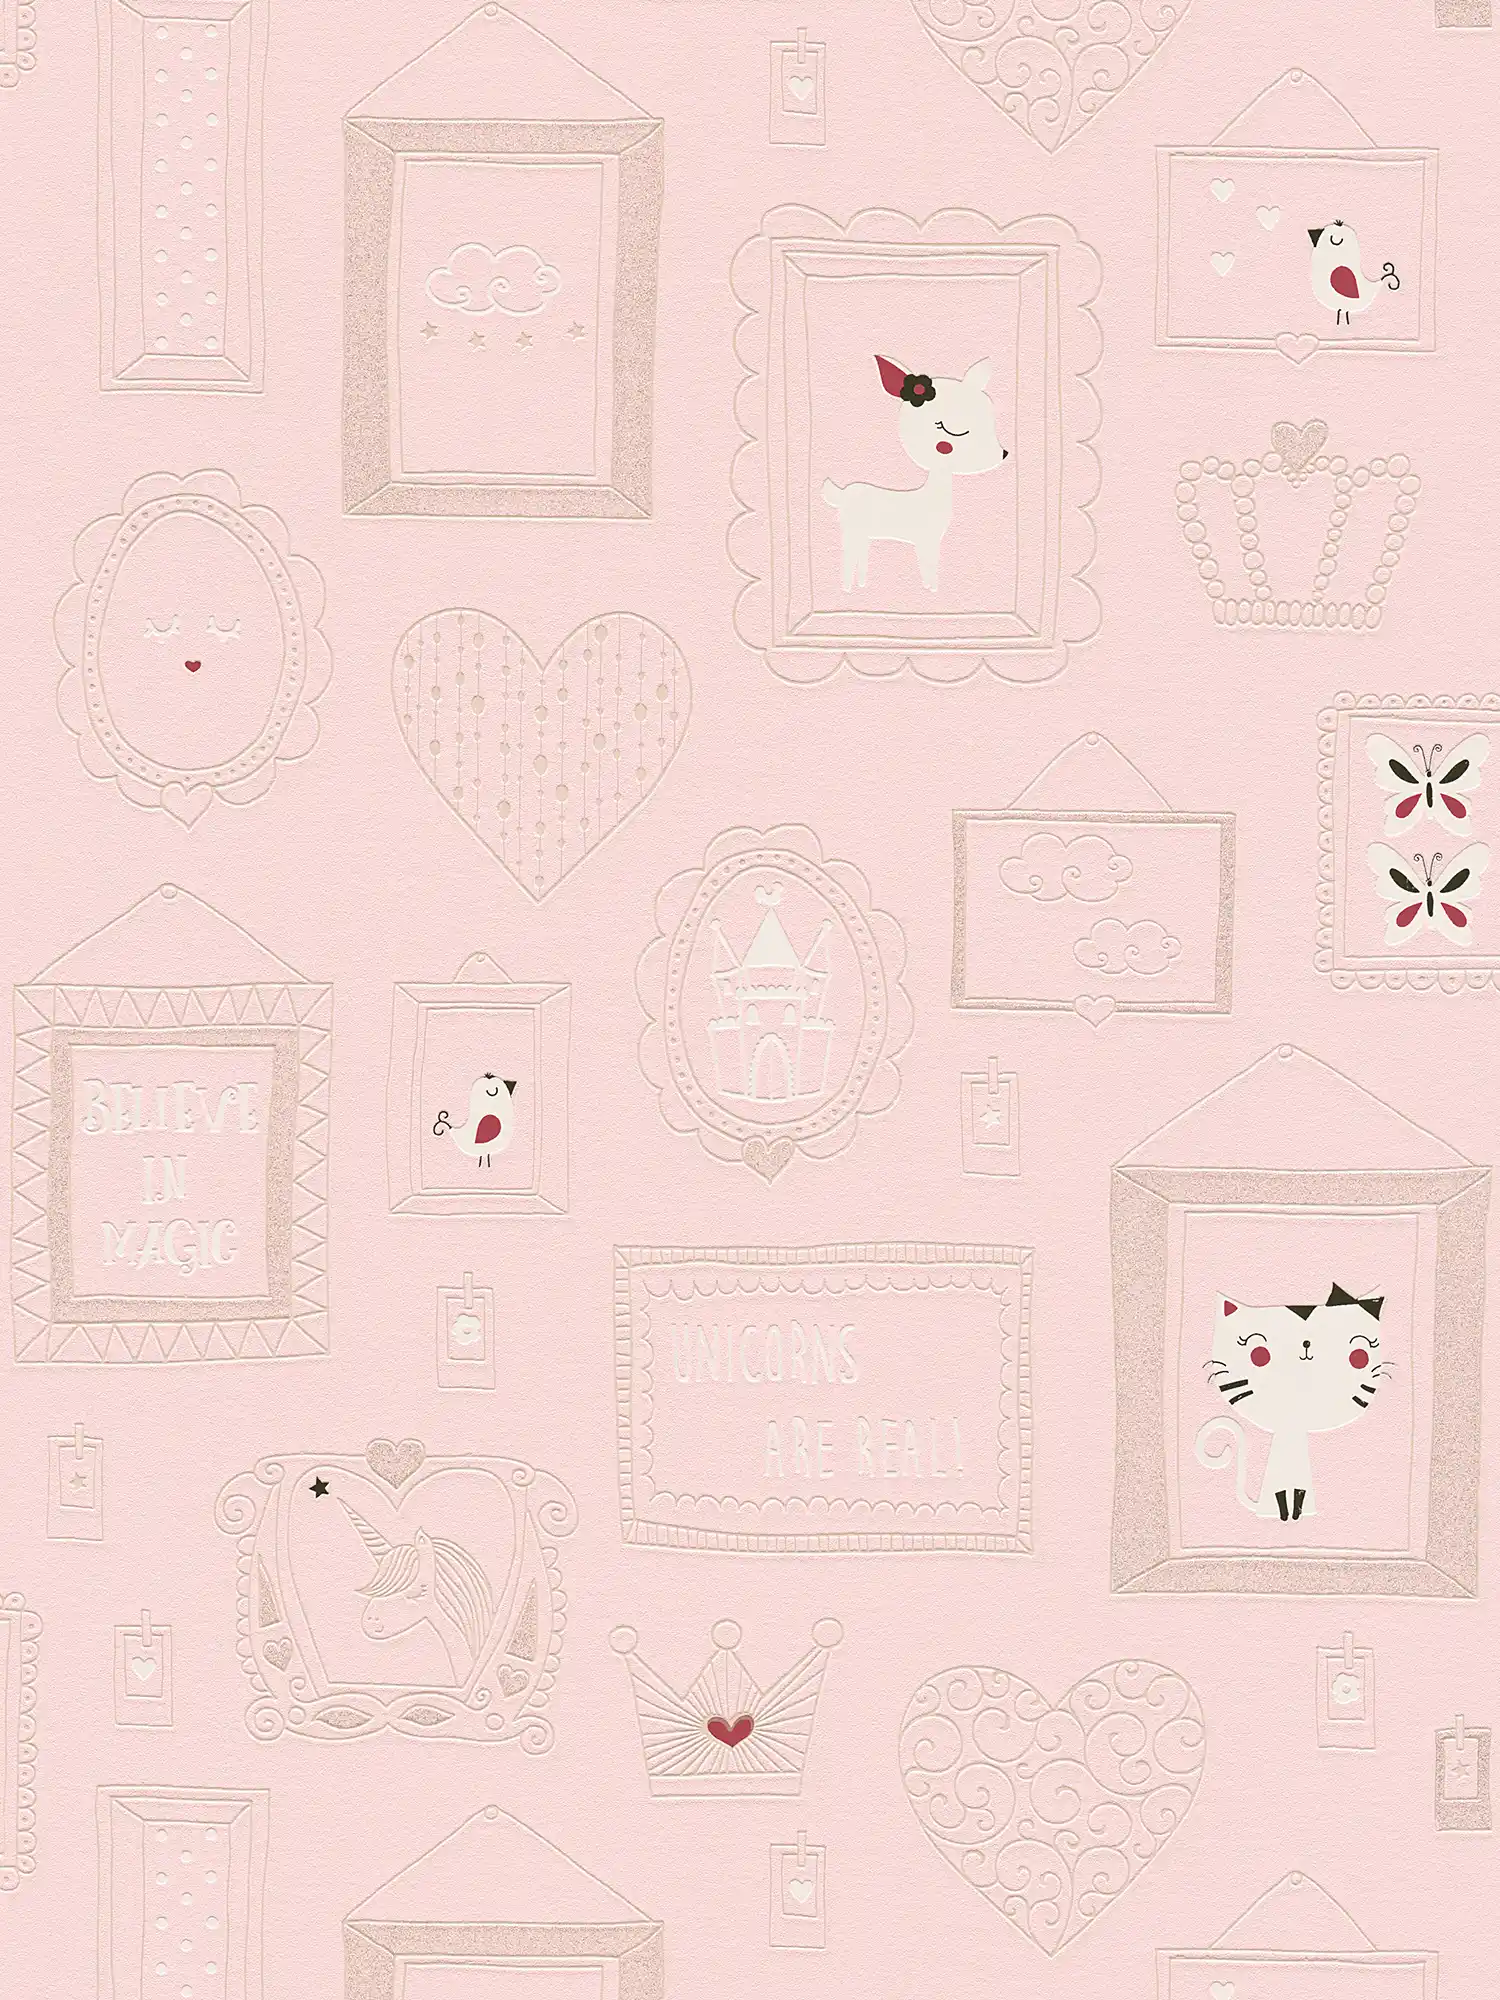         Behang meisjeskamer dierenmotieven met glitter - roze, wit
    